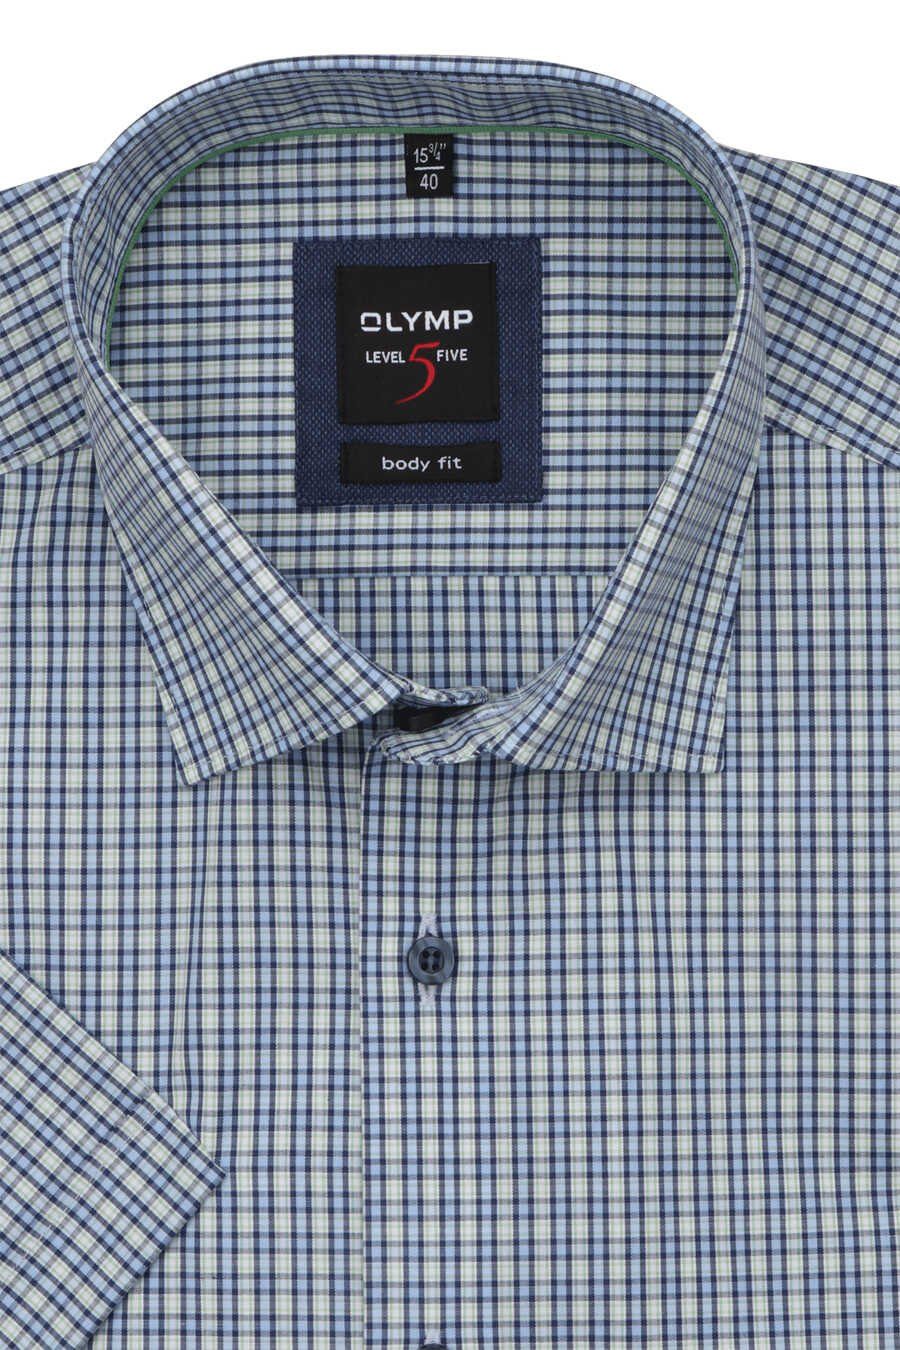 Herren Hemden OLYMP Businesshemd OLYMP Level Five body fit